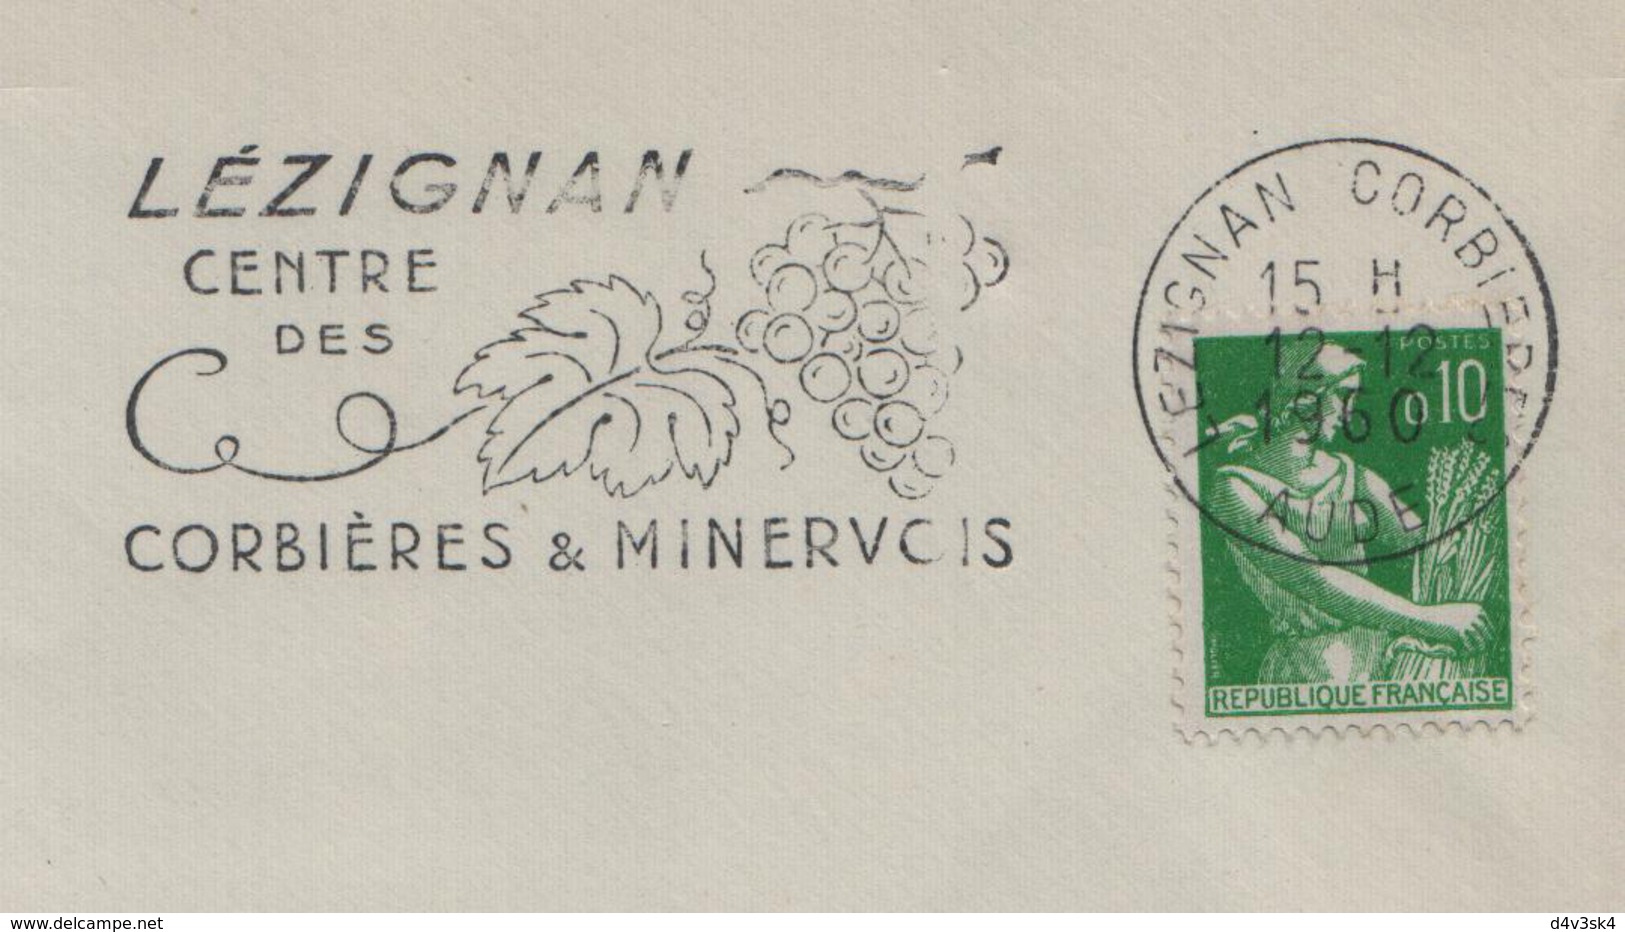 1960 France Aude Lezignan Vins Corbières Minervois Vigne Vendanges Wines Vineyard Vini Enologia Vigneti Wein - Wines & Alcohols